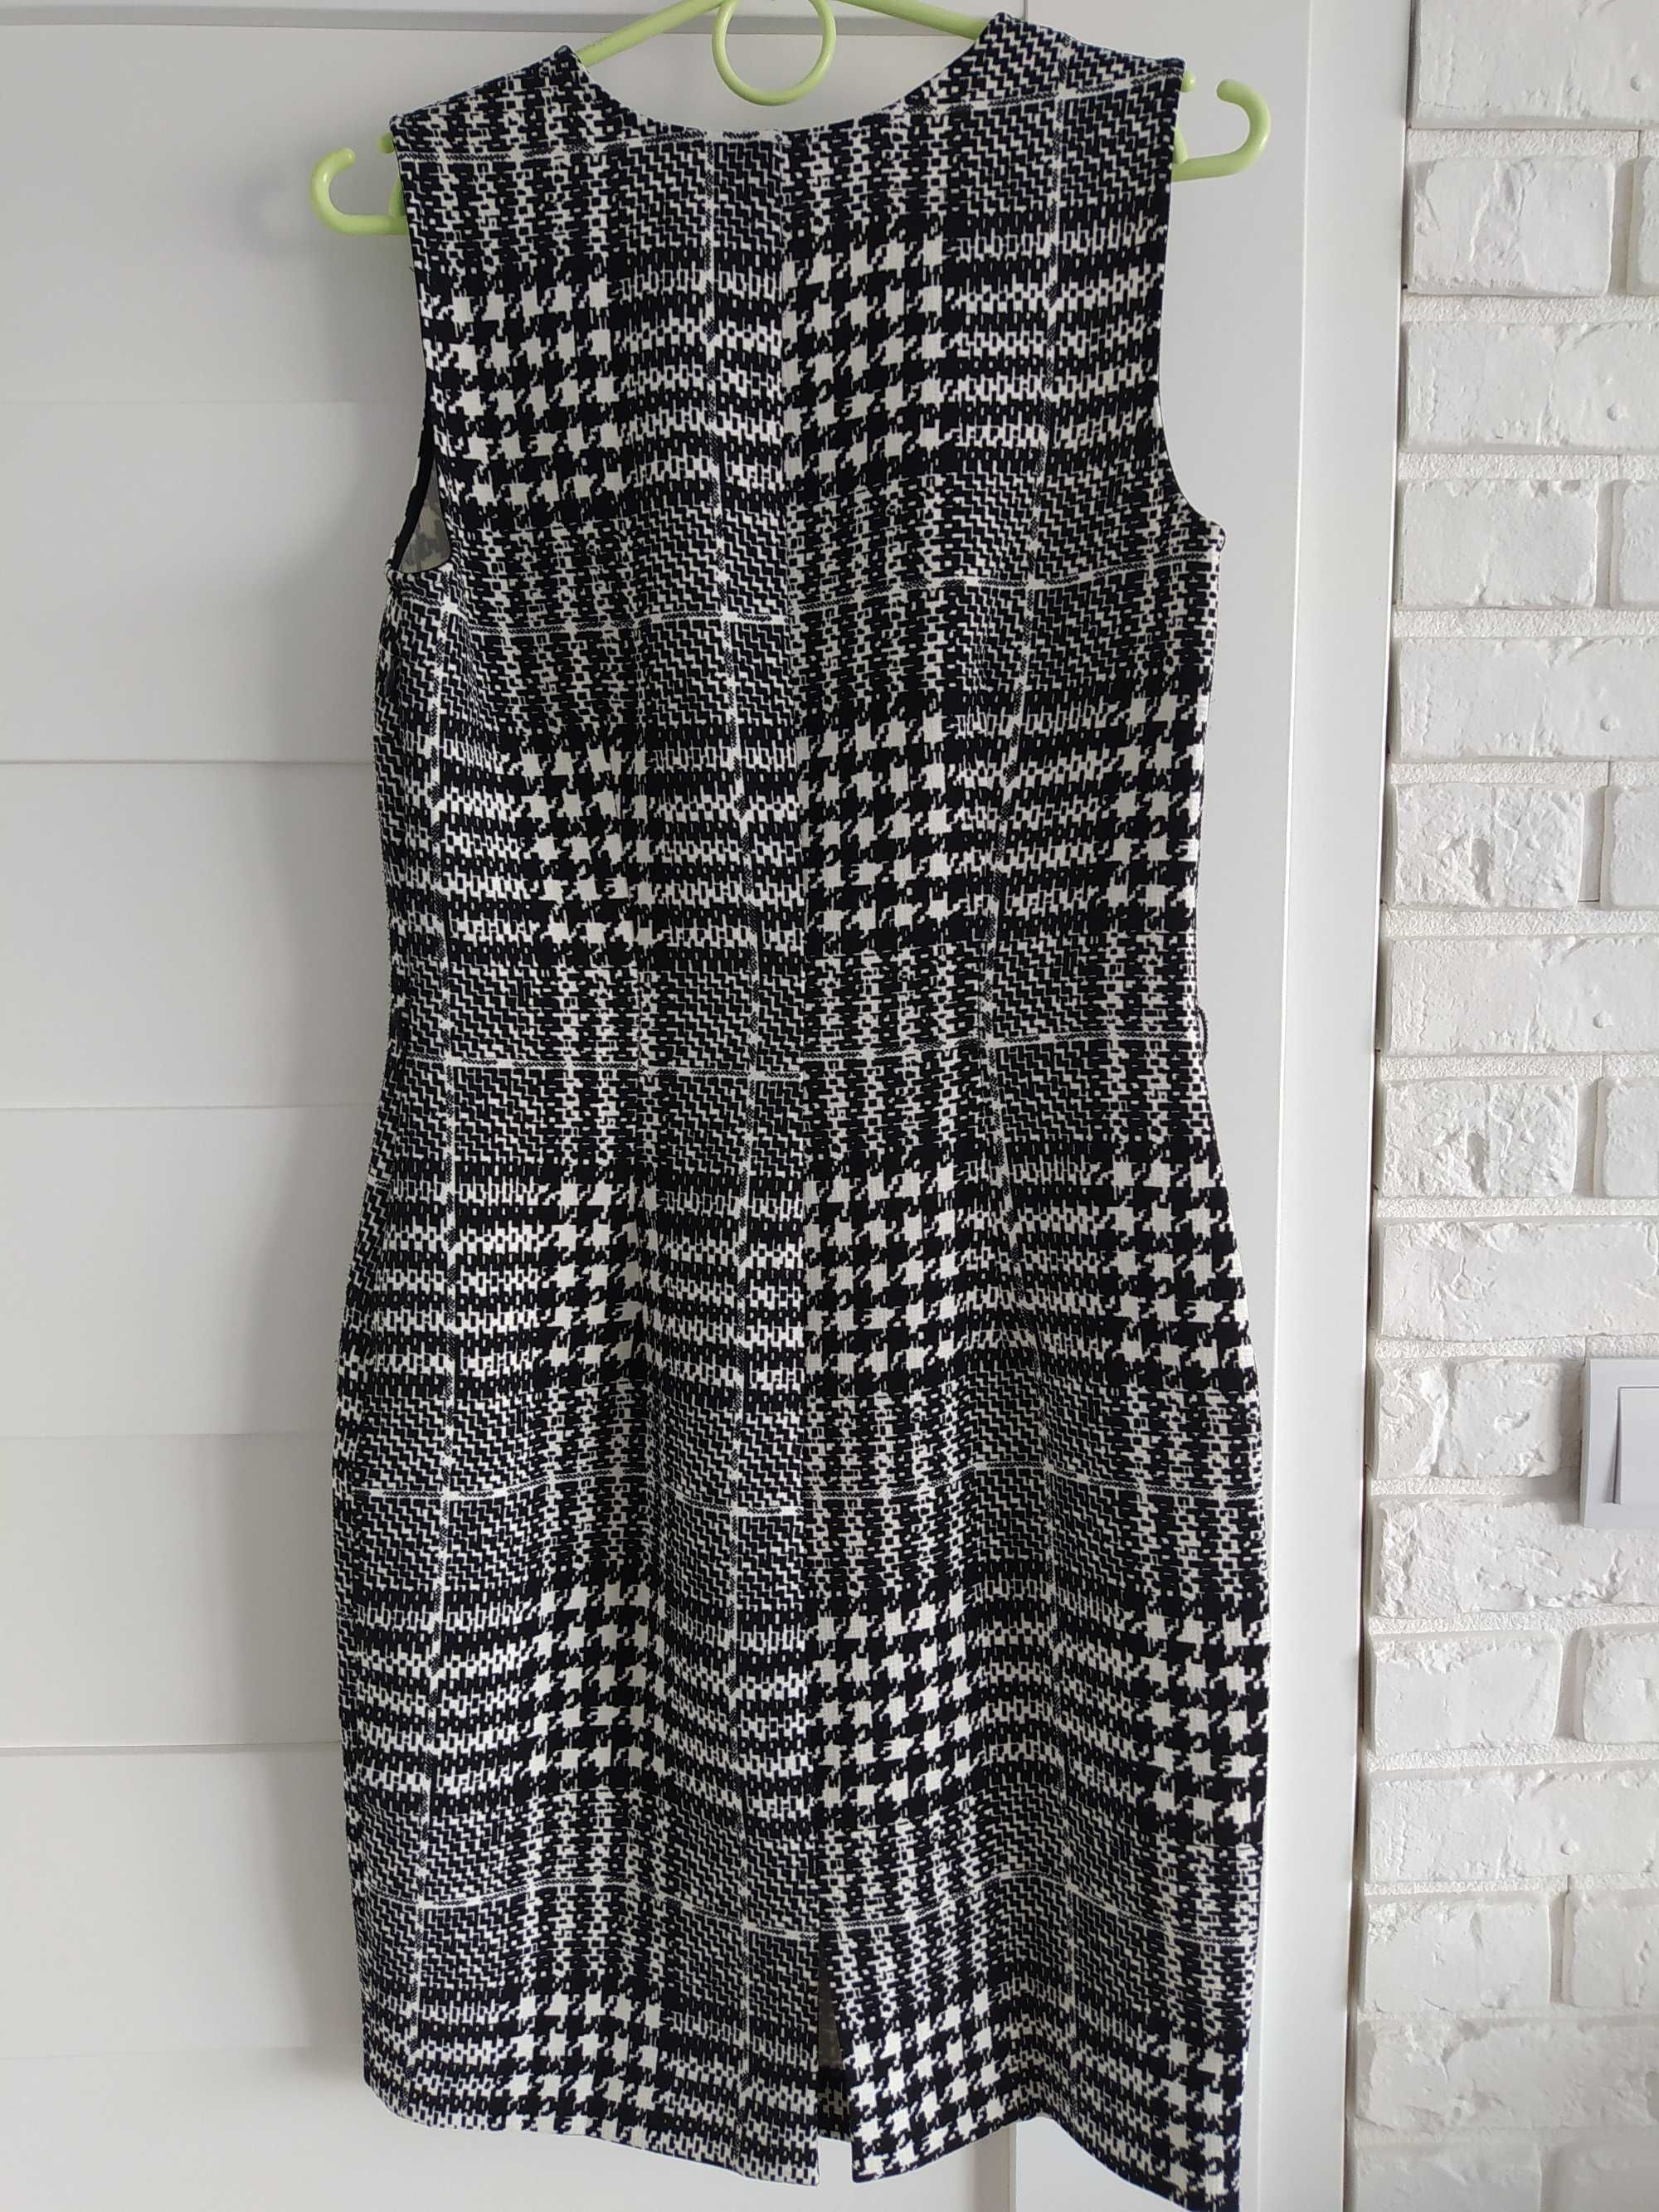 Sukienka Anna Field, ołówkowa, czarno biała, rozmiar 36, S, nowa